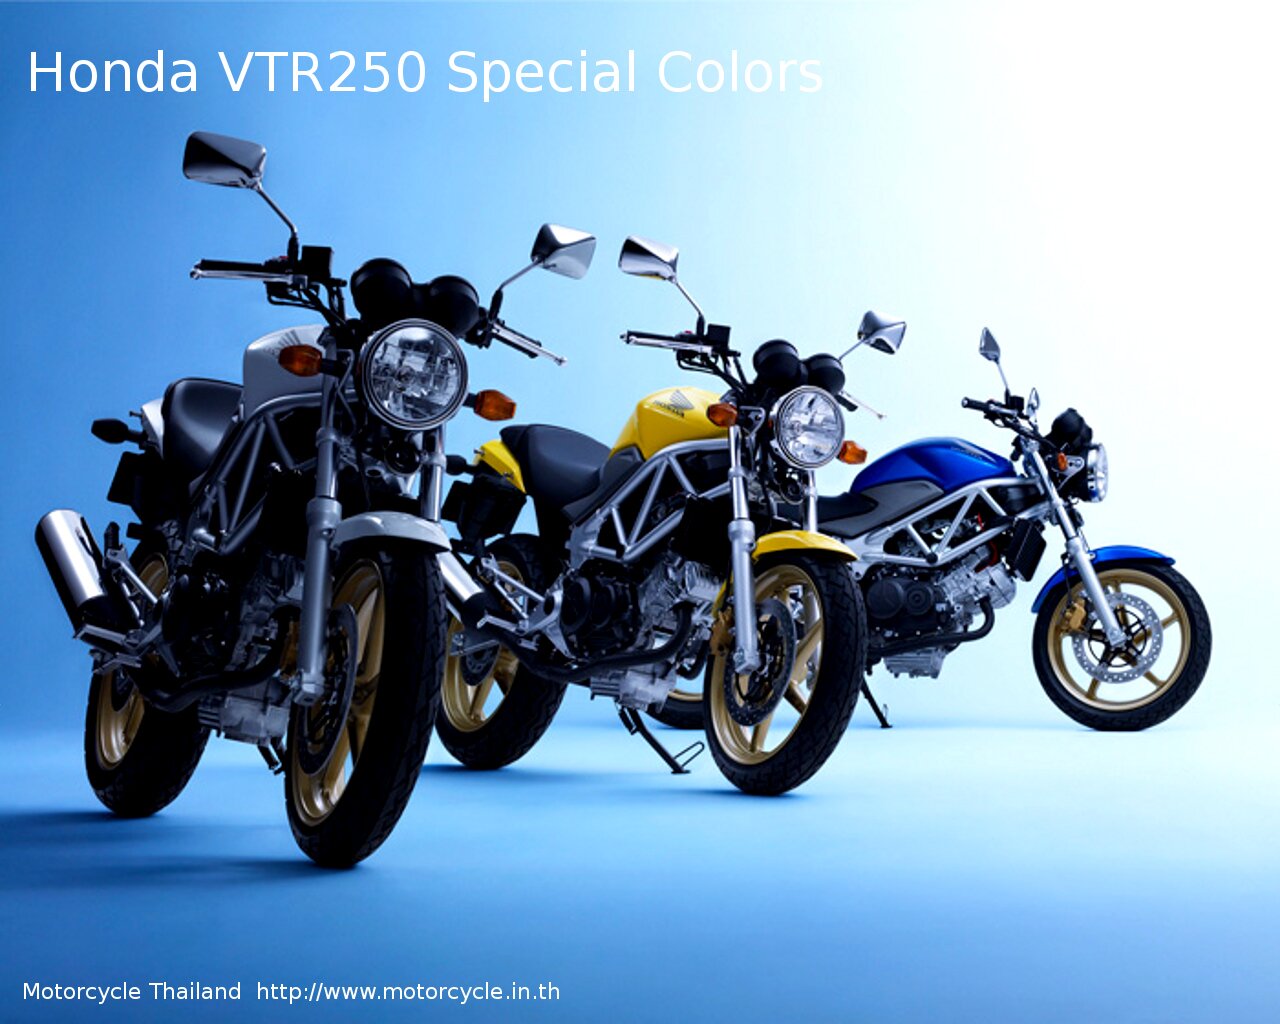 Honda VTR250 Special Colors